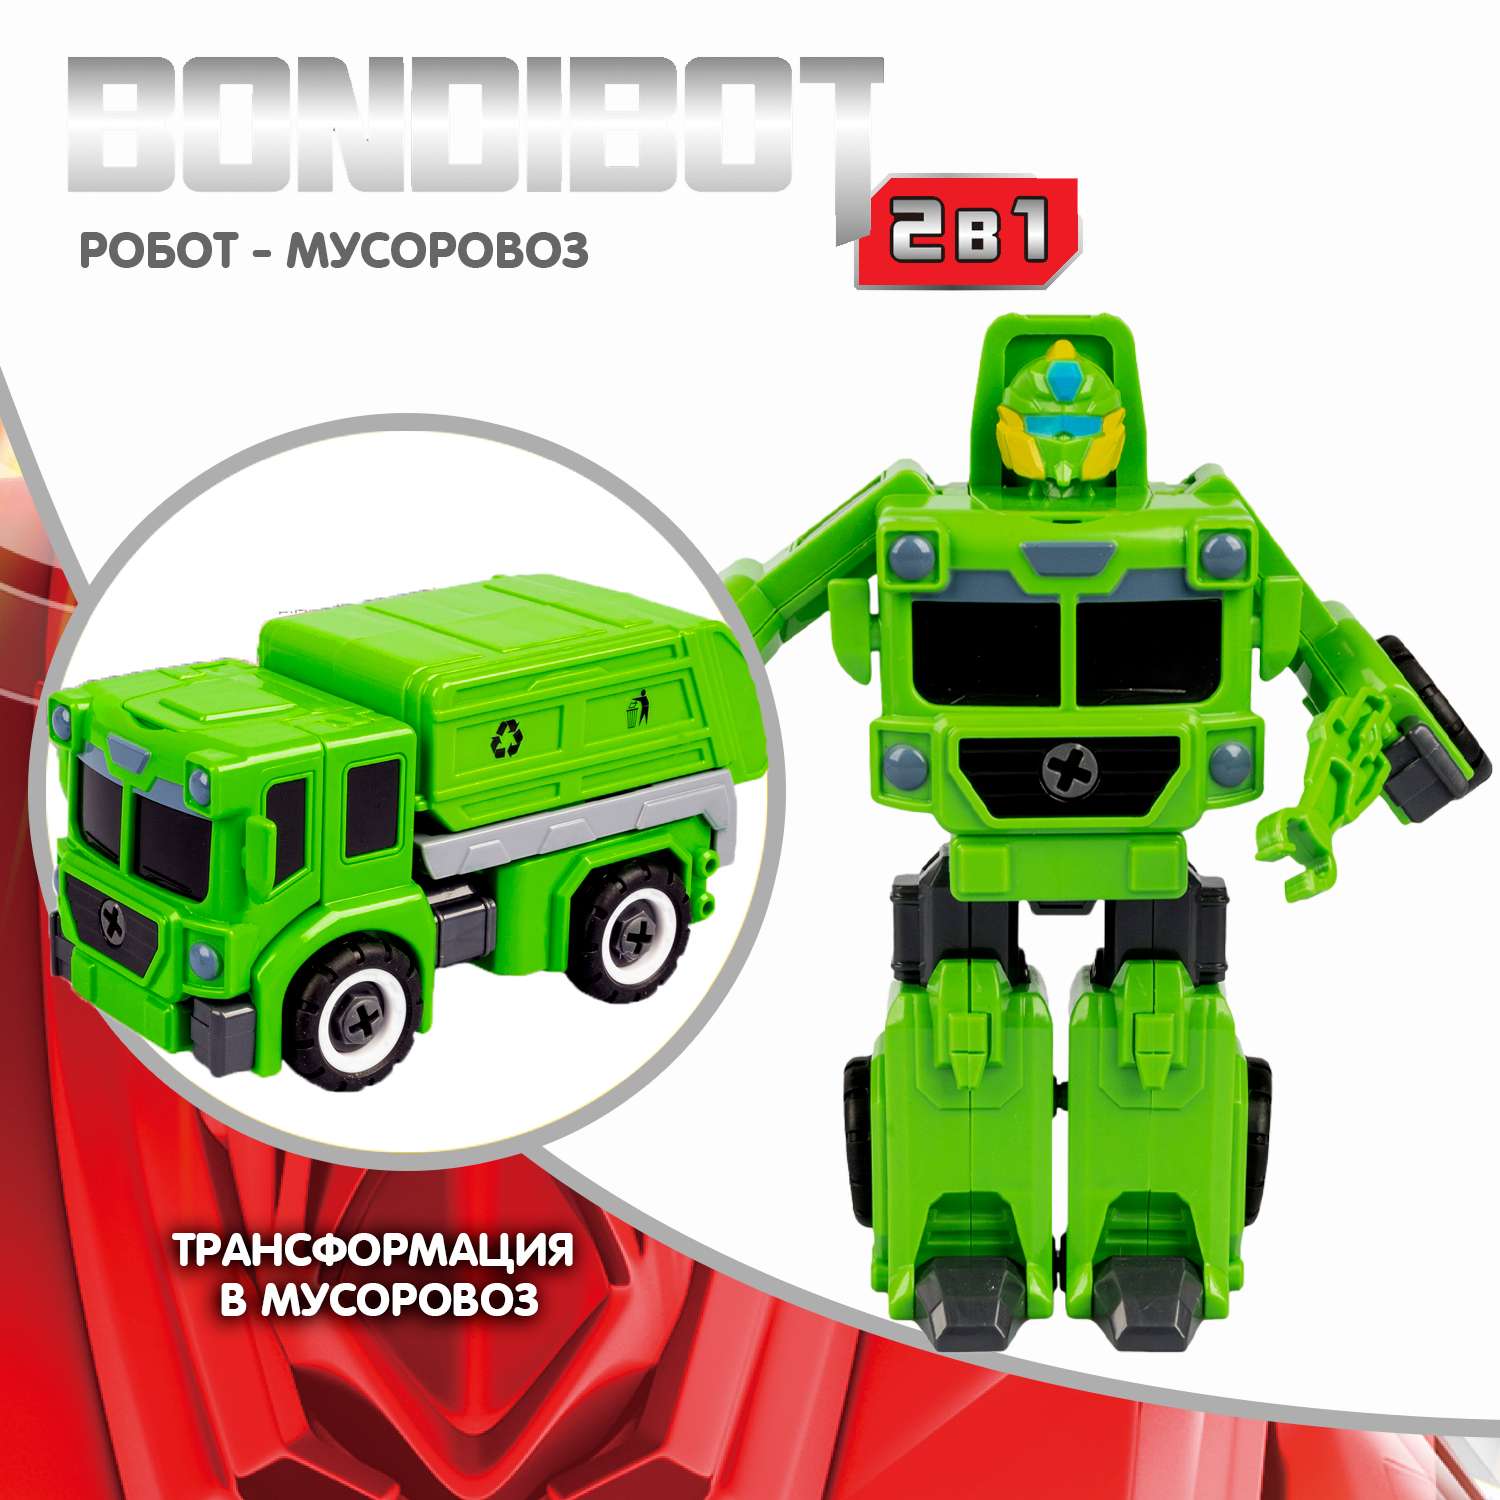 Трансформер-конструктор BONDIBON Bondibot Робот-мусоровоз 2 в 1 зеленого цвета с отвёрткой - фото 2